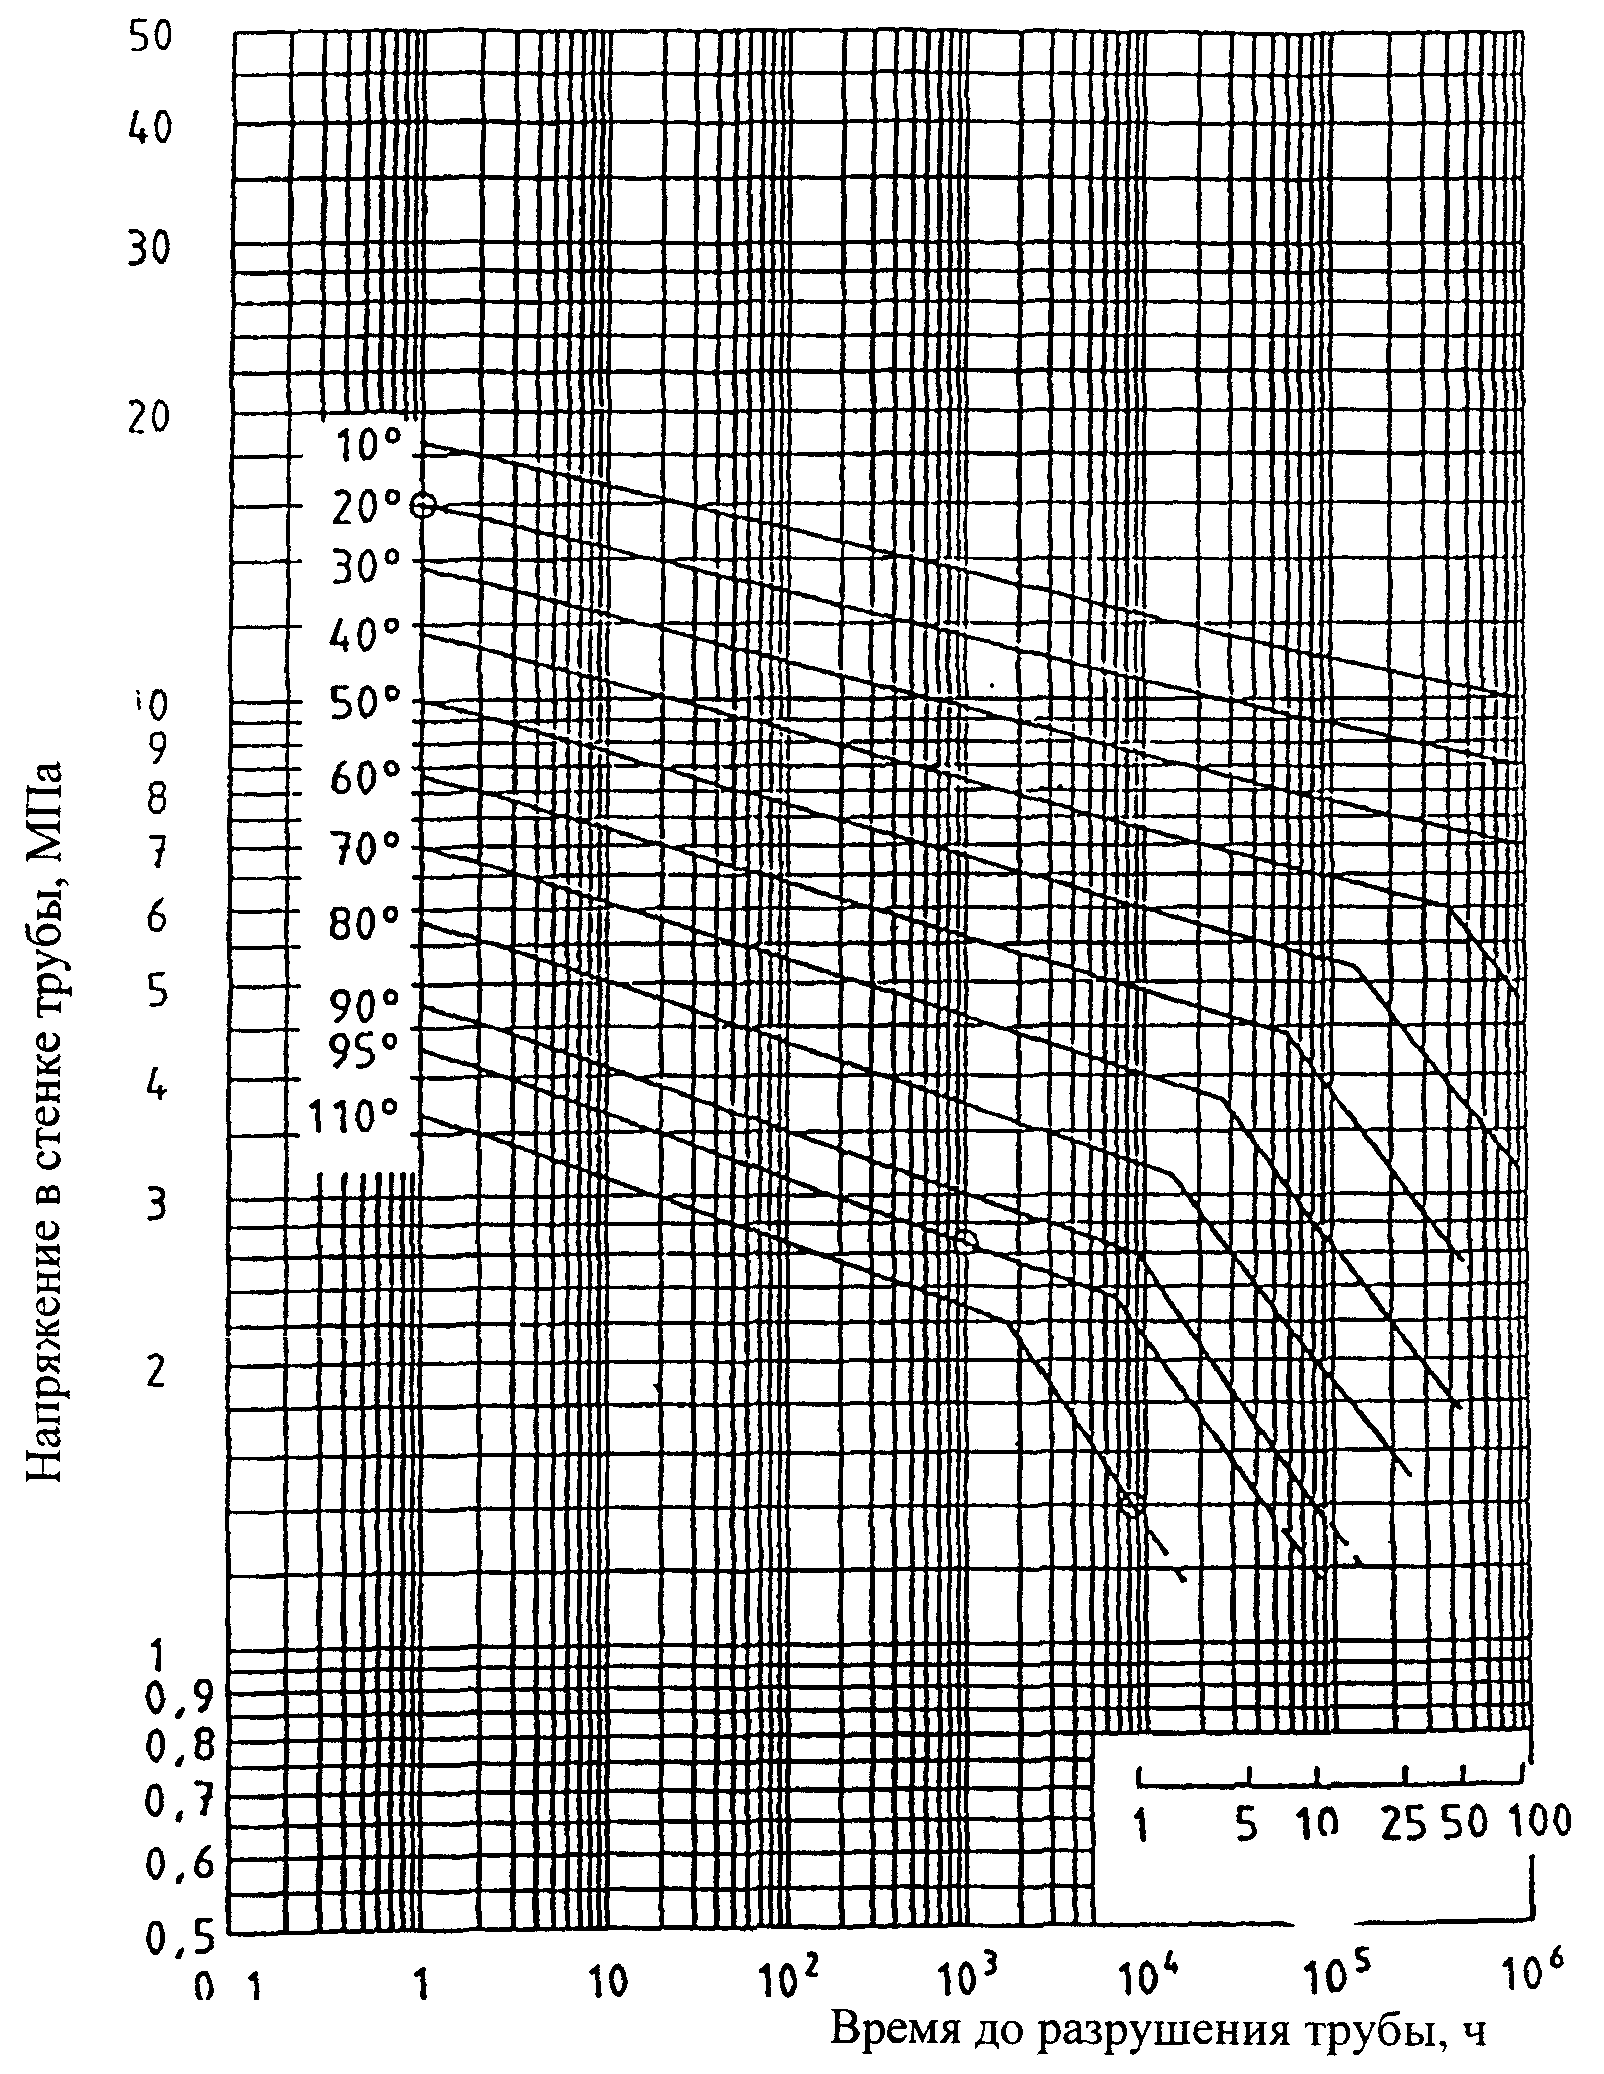 Гост 52134 2003. Эталонные графики длительной прочности PP-R. Номограмма долговременной прочности ПП Тип 1 в электронном виде. ГОСТ 23097 -78. 16х2 ГОСТ 52134-2003 труба фото.